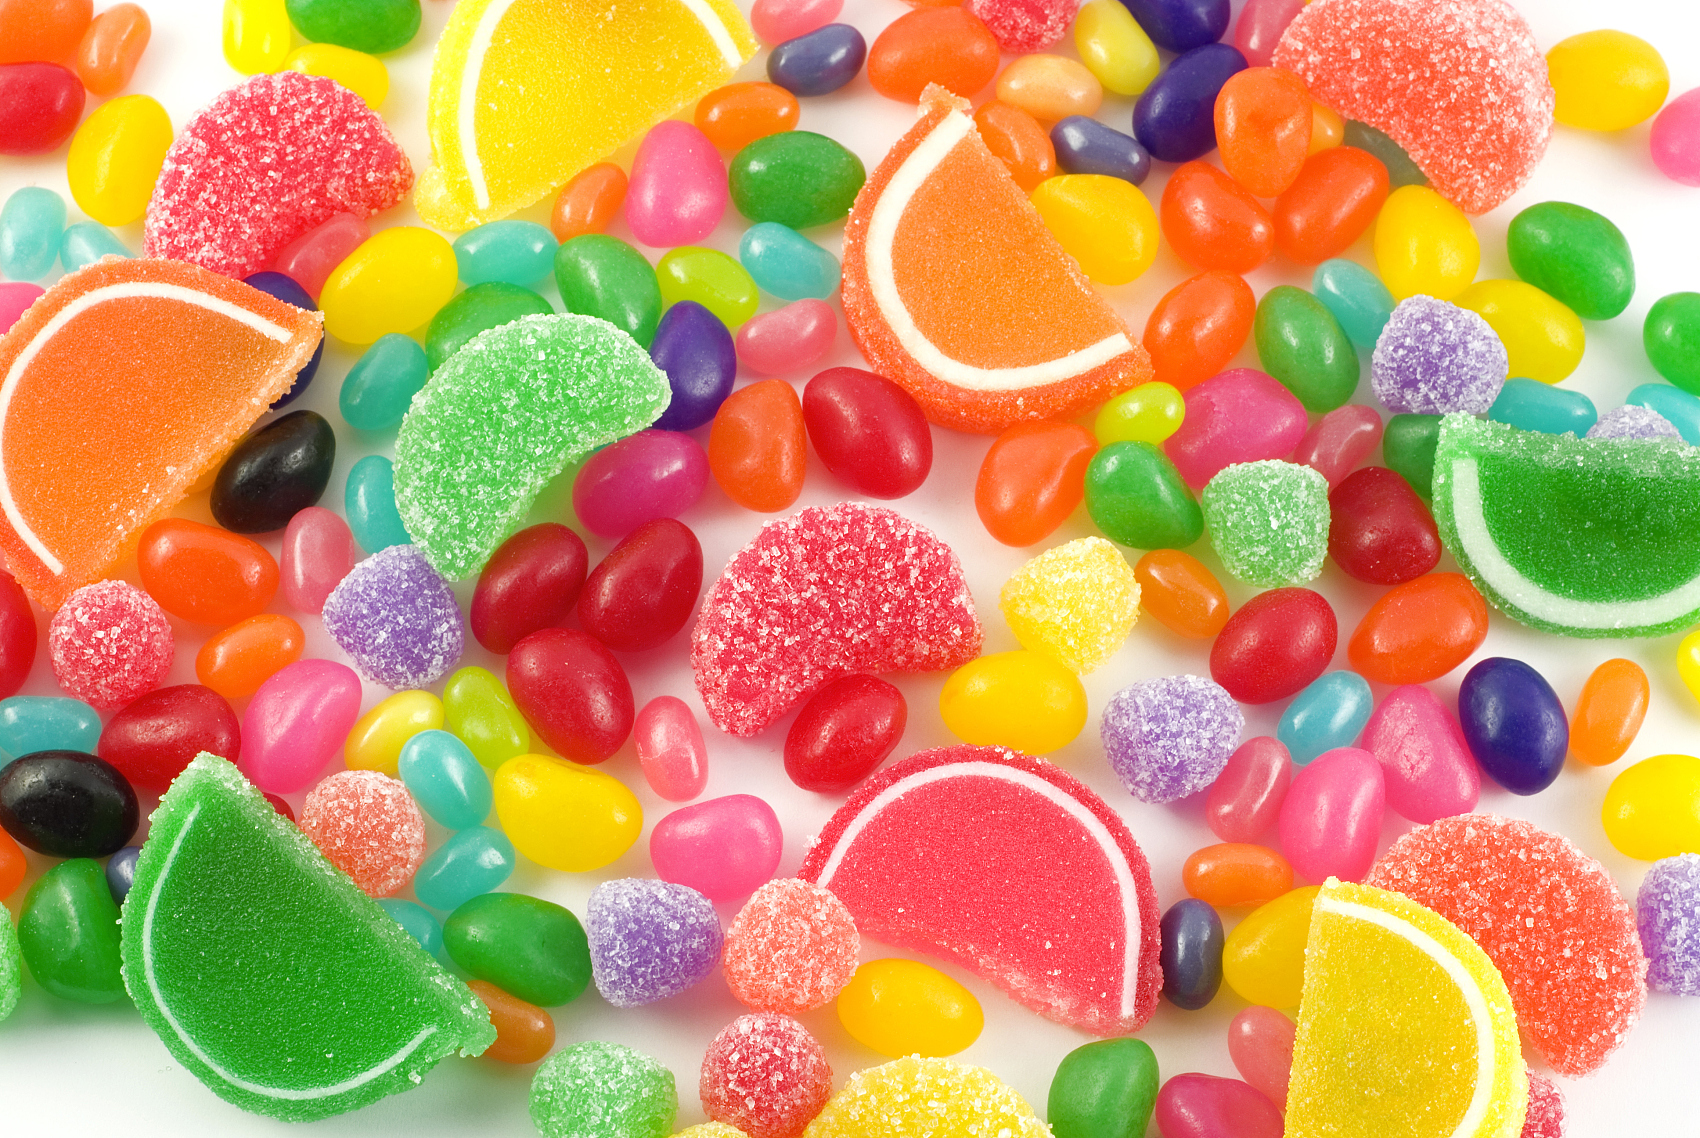 Jarabe de glucosa utilizado en dulces.